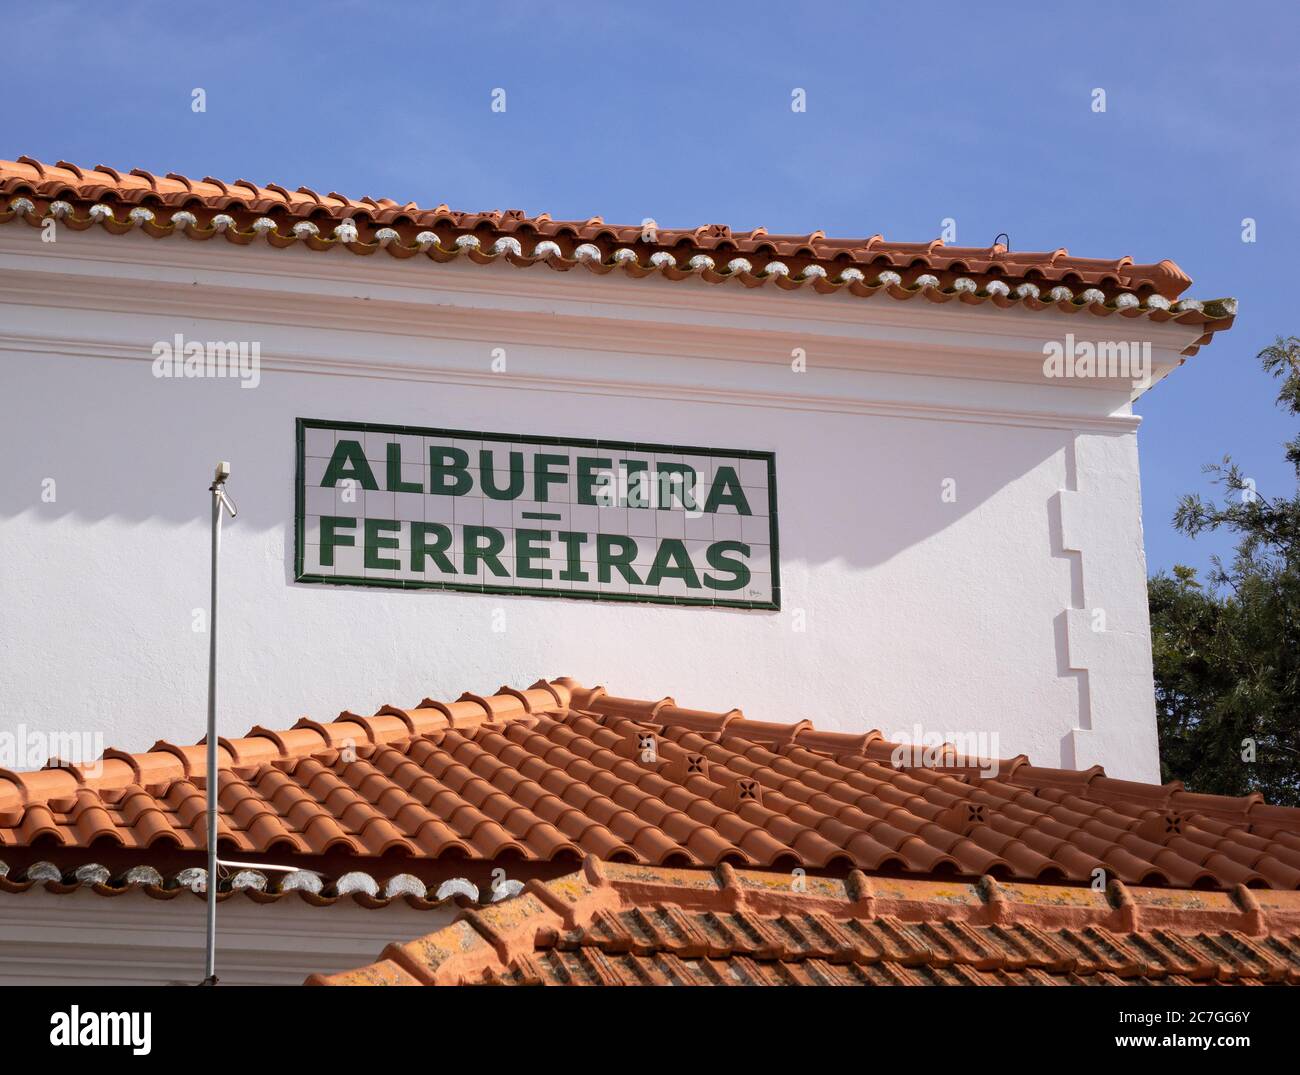 Das Albufeira Ferreiras Bahnhof Keramikfliesen Schild Auf Dem Bahnhofsgebäude Außenansicht Stockfoto